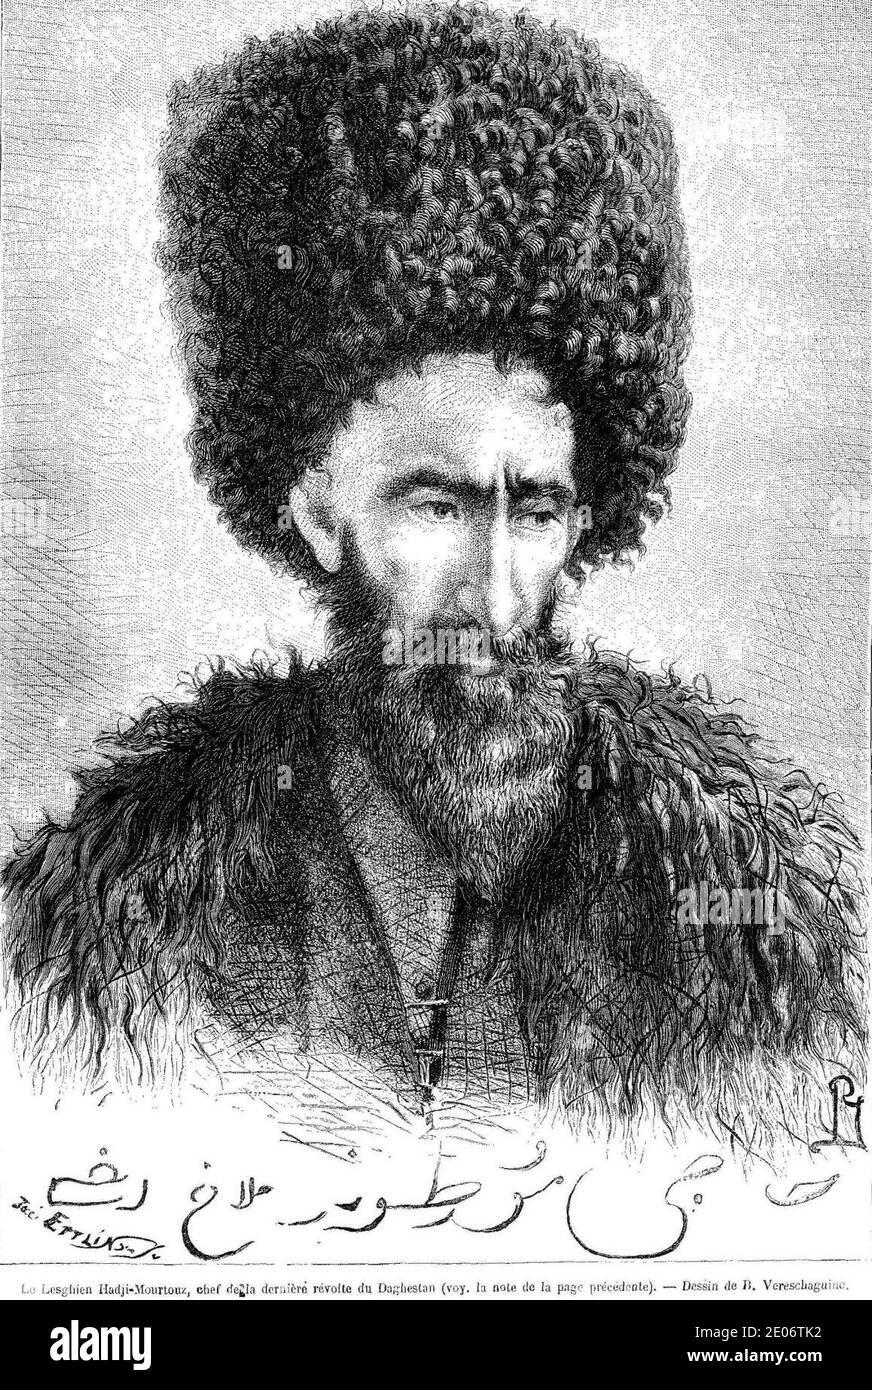 Le Lesghien Hadji-Mourtouz, ehef dela derniere revolte du Daghstan. B. Vereschaguine. Le Tour du monde (Paris. 1860-1914). Stockfoto